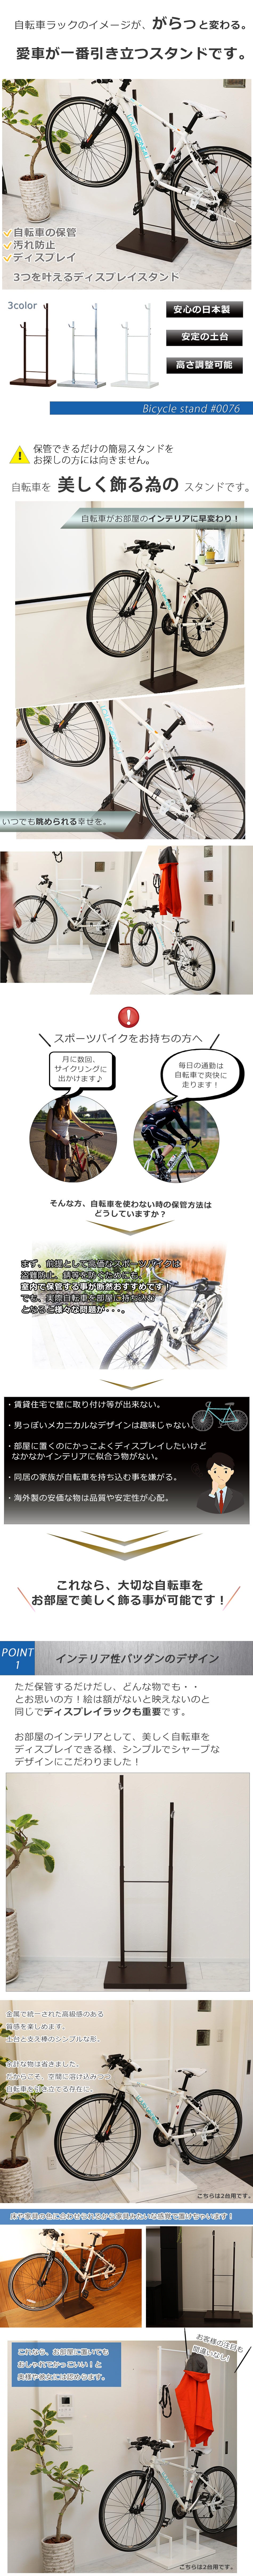 『室内自転車スタンド』 自転車 / 1